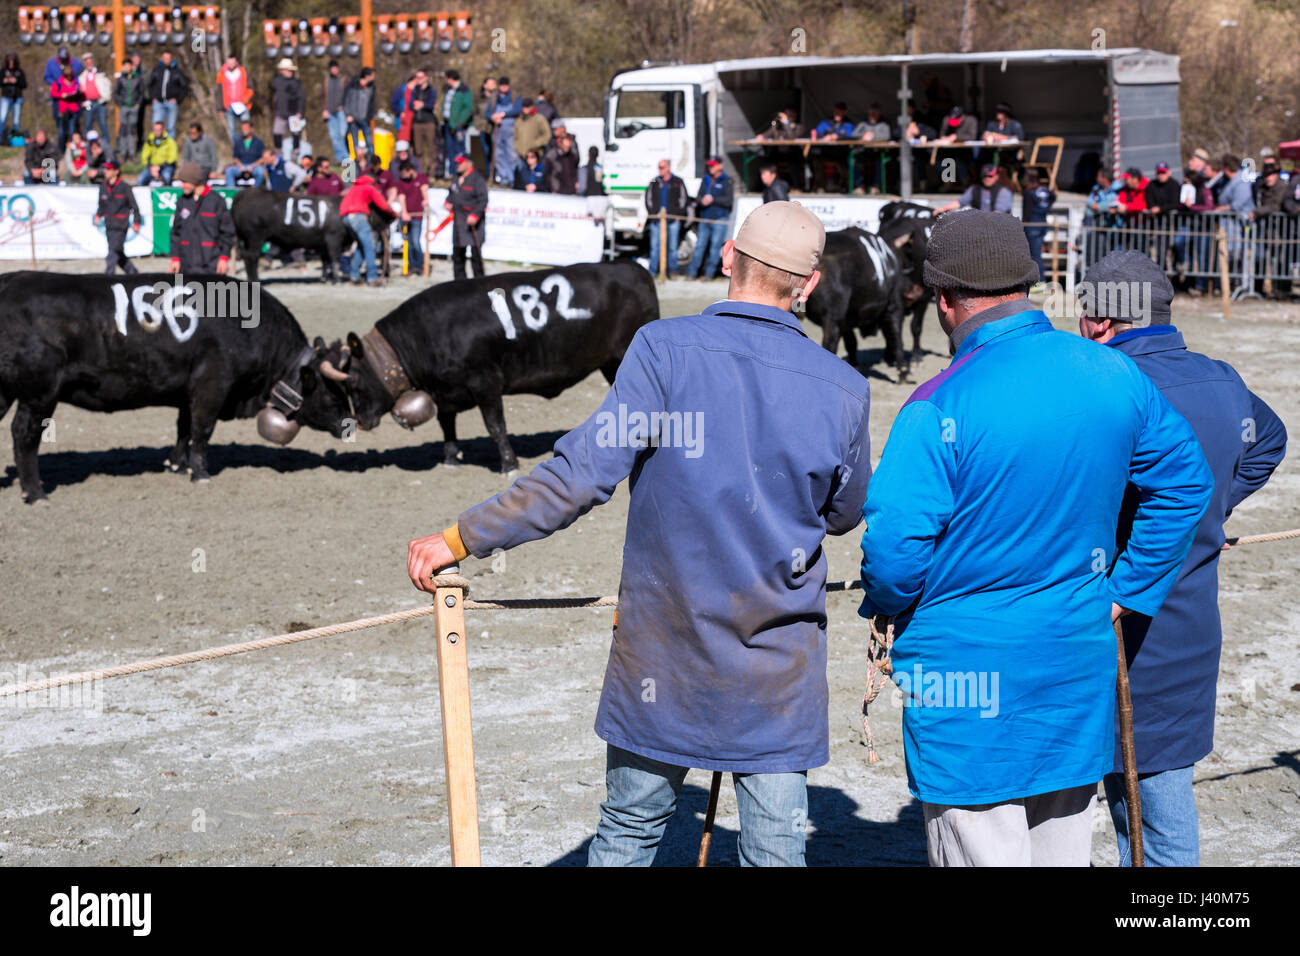 Gli agricoltori a guardare le loro mucche Eringer corni di bloccaggio durante una vacca lotta, tradizione, il patrimonio del Vallese, Les Haudères, Svizzera Foto Stock